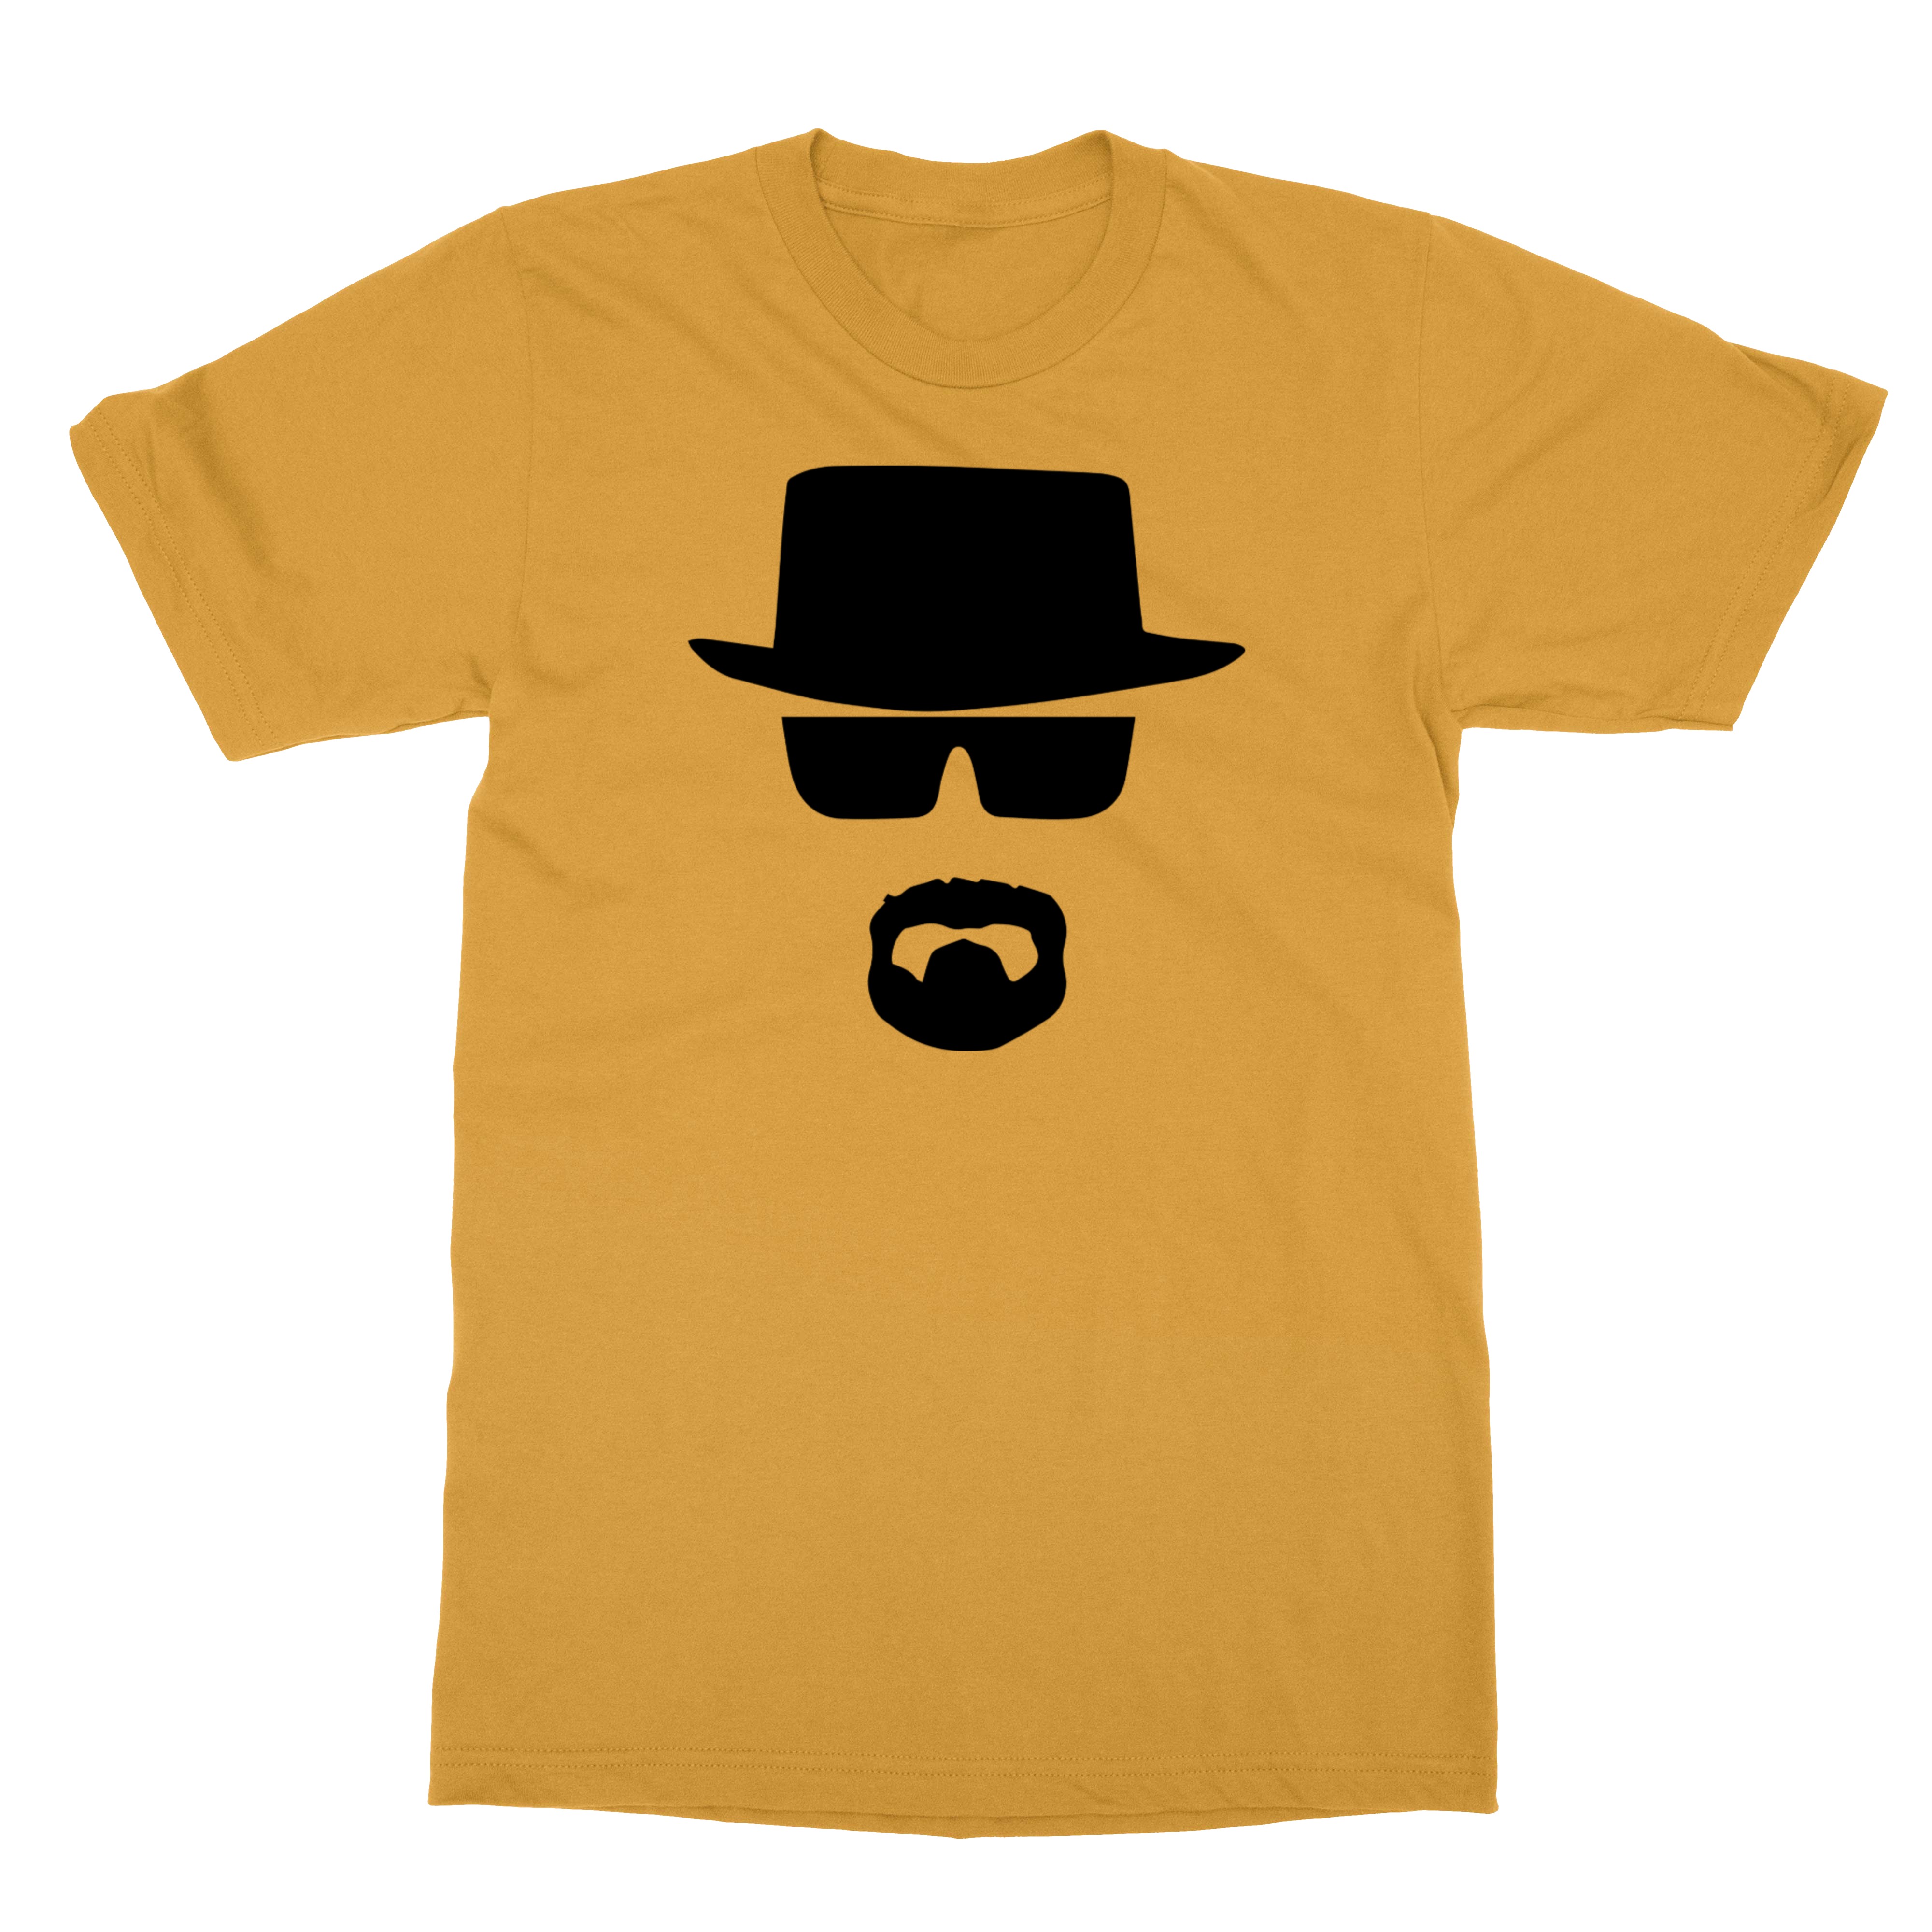 NEW BREAKING BAD Heisenberg LOGO TV Men's T-Shirt | eBay